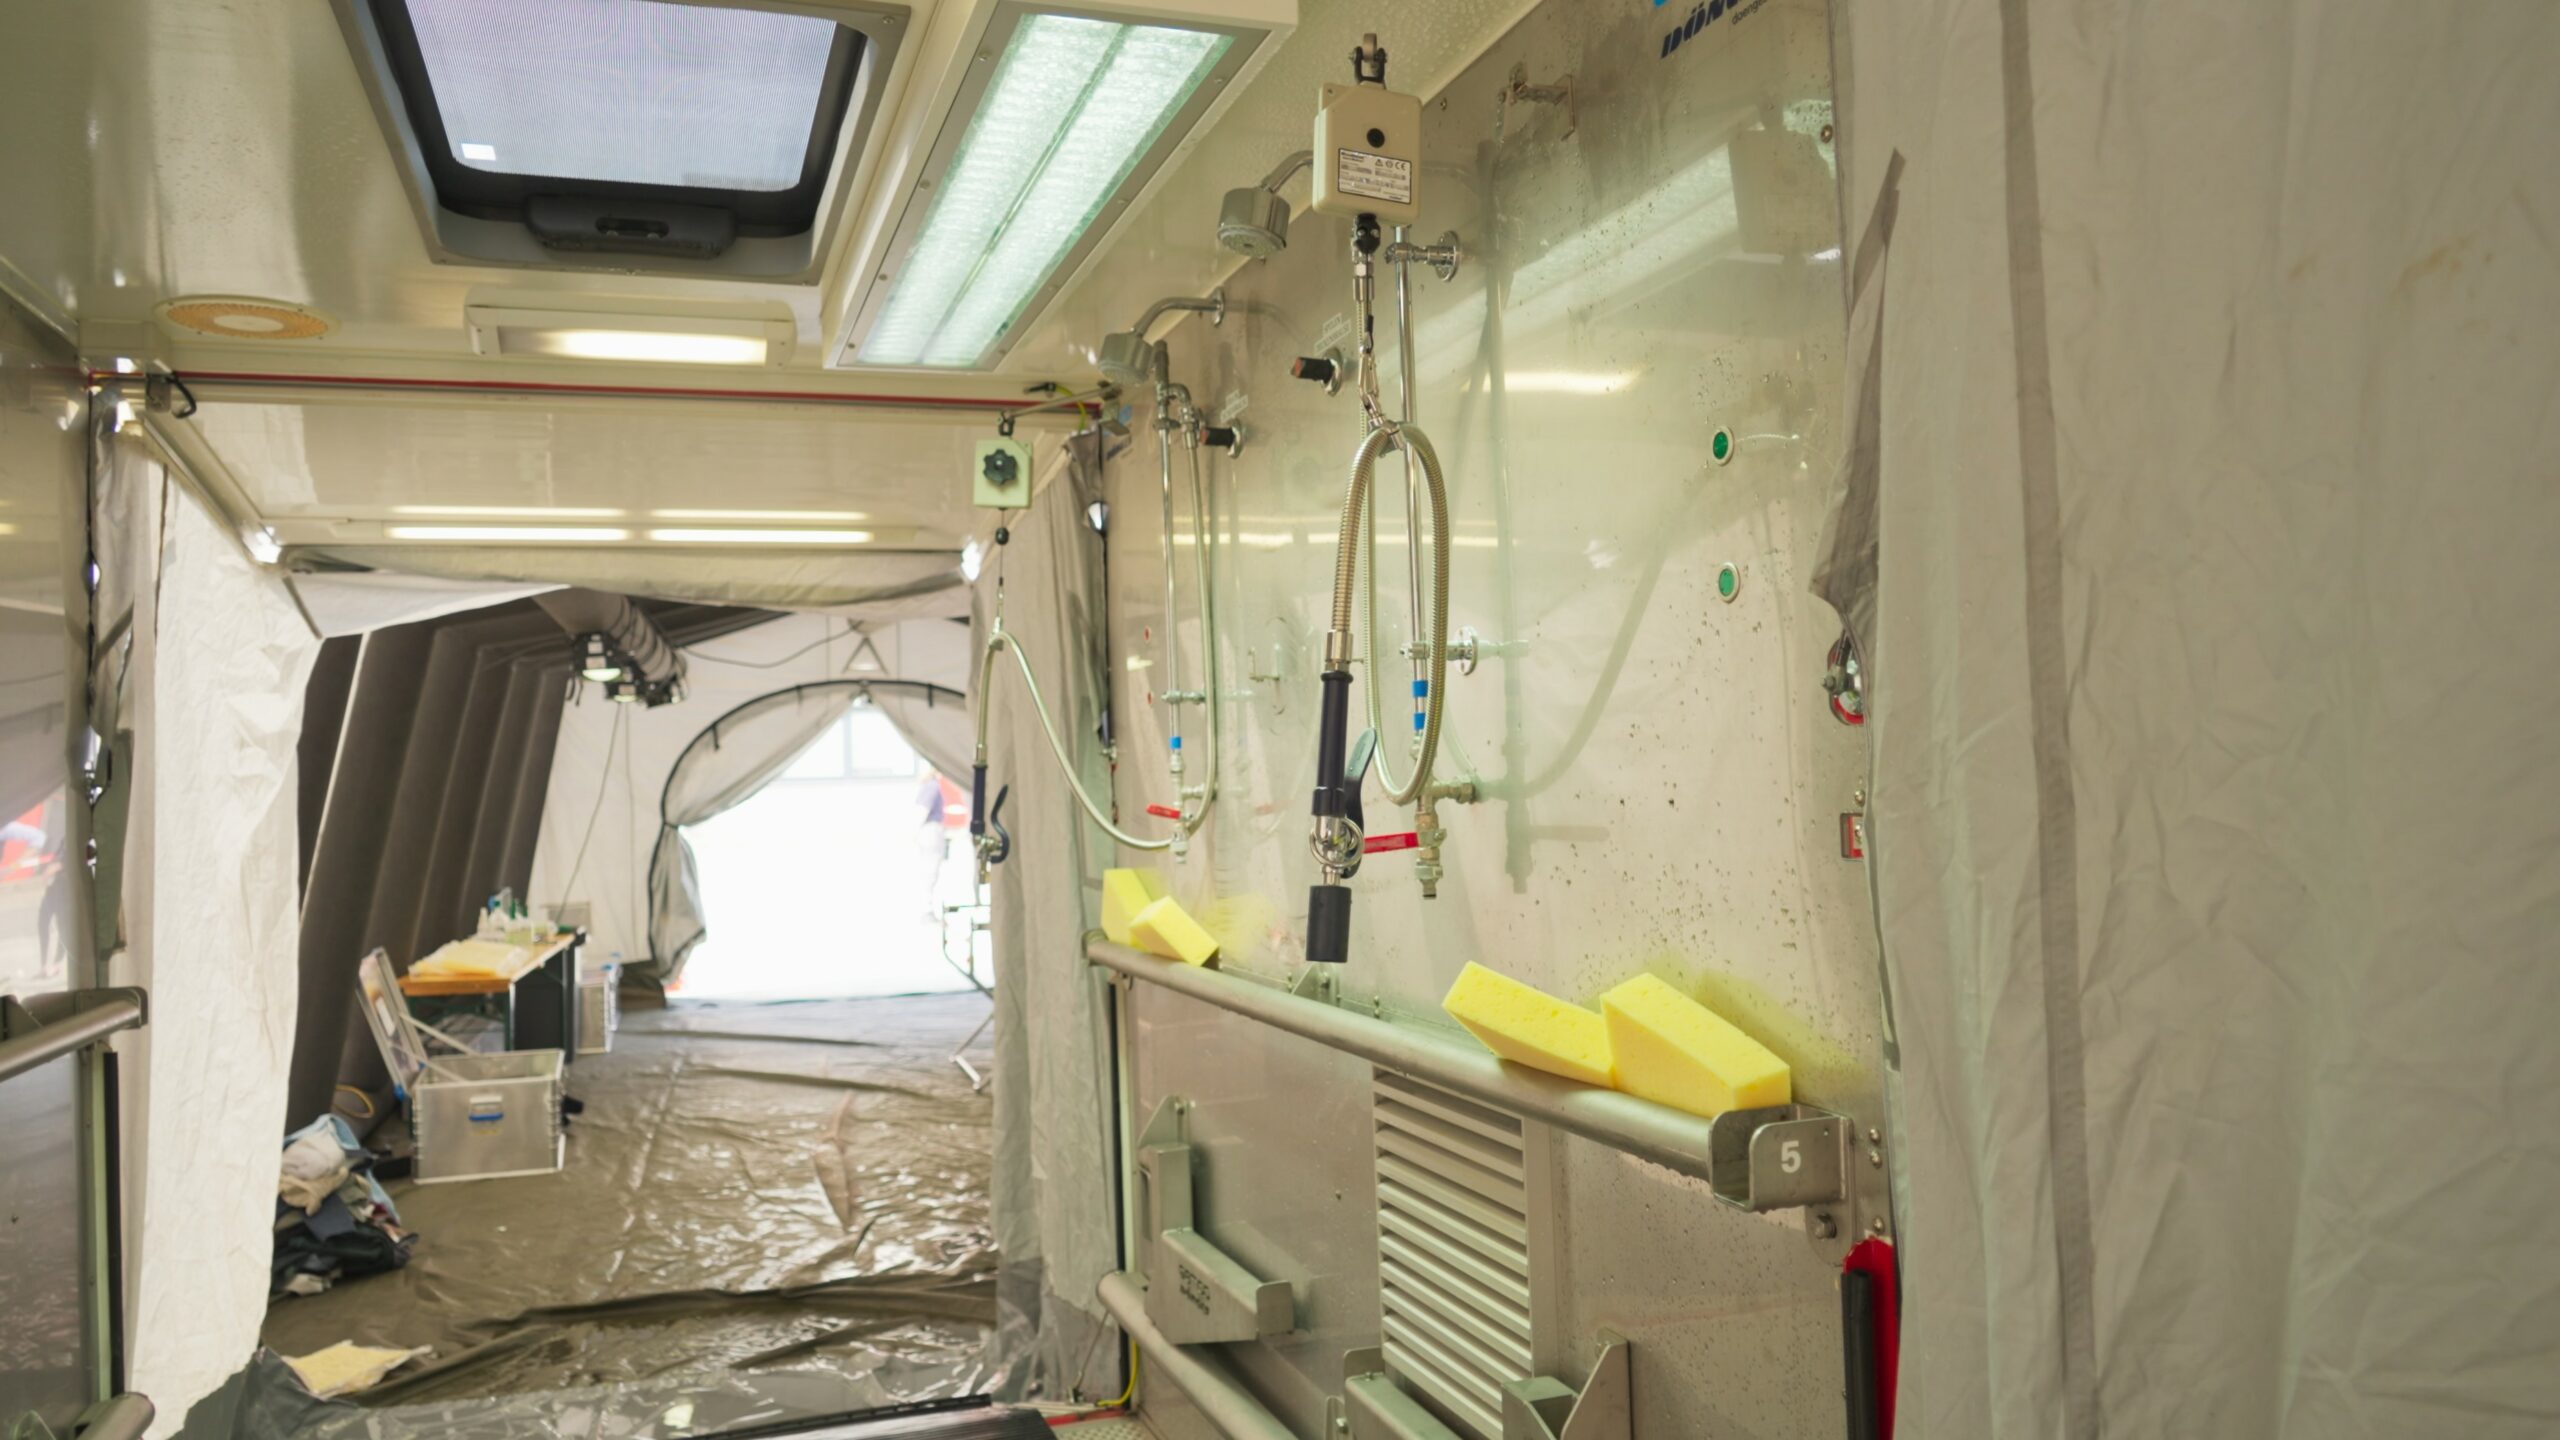 A decontamination shower area